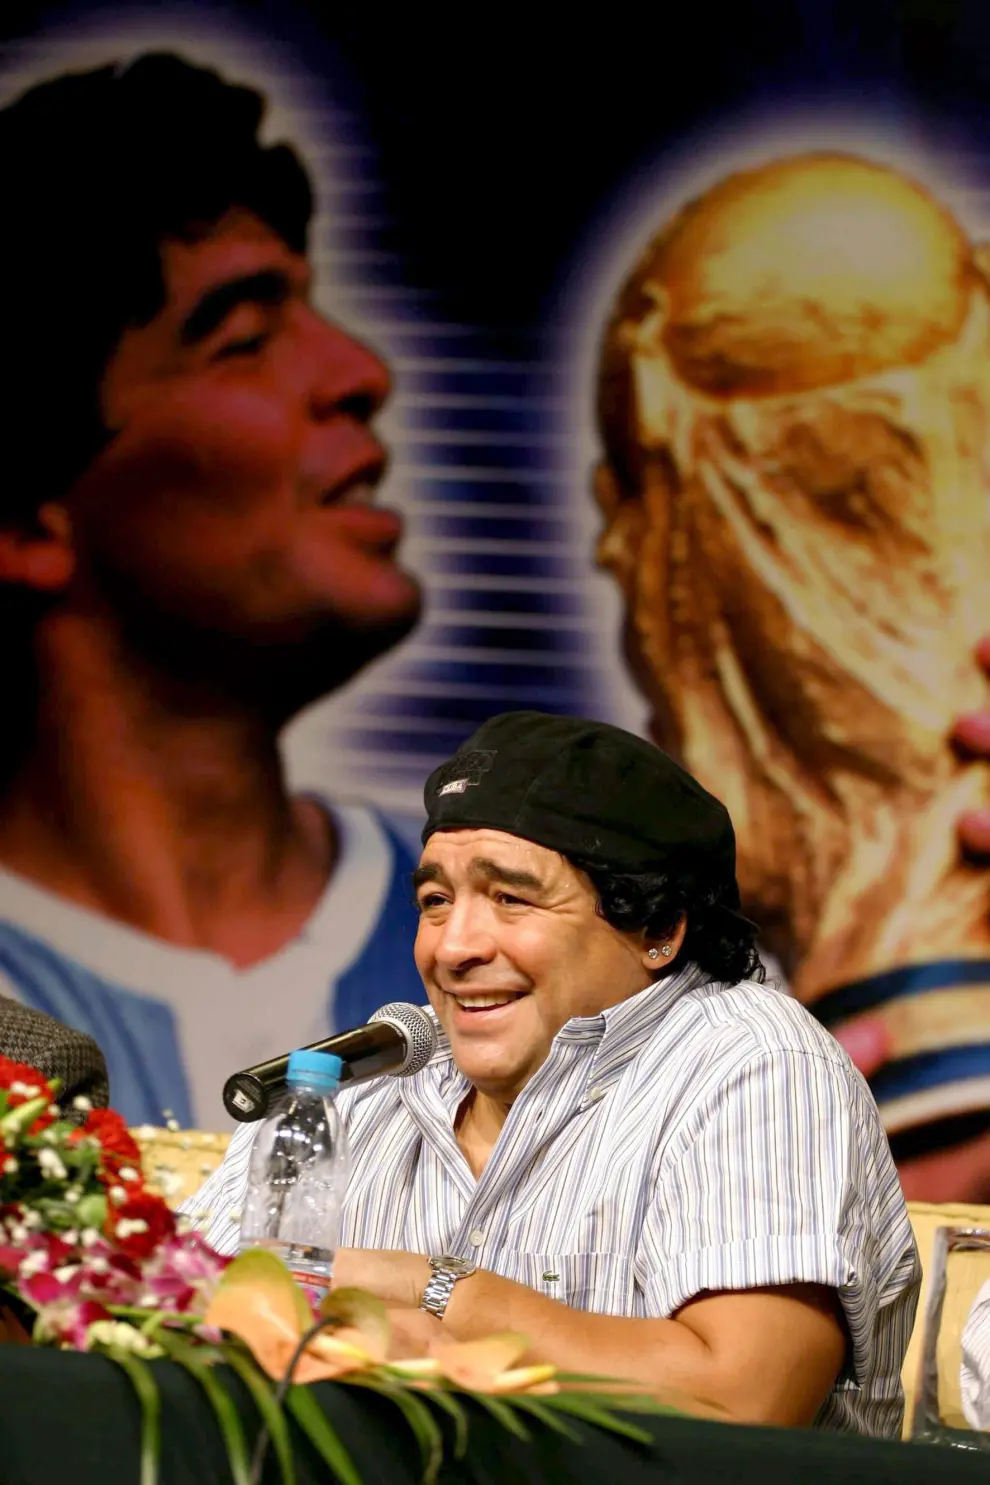 La trayectoria de Maradona en imágenes